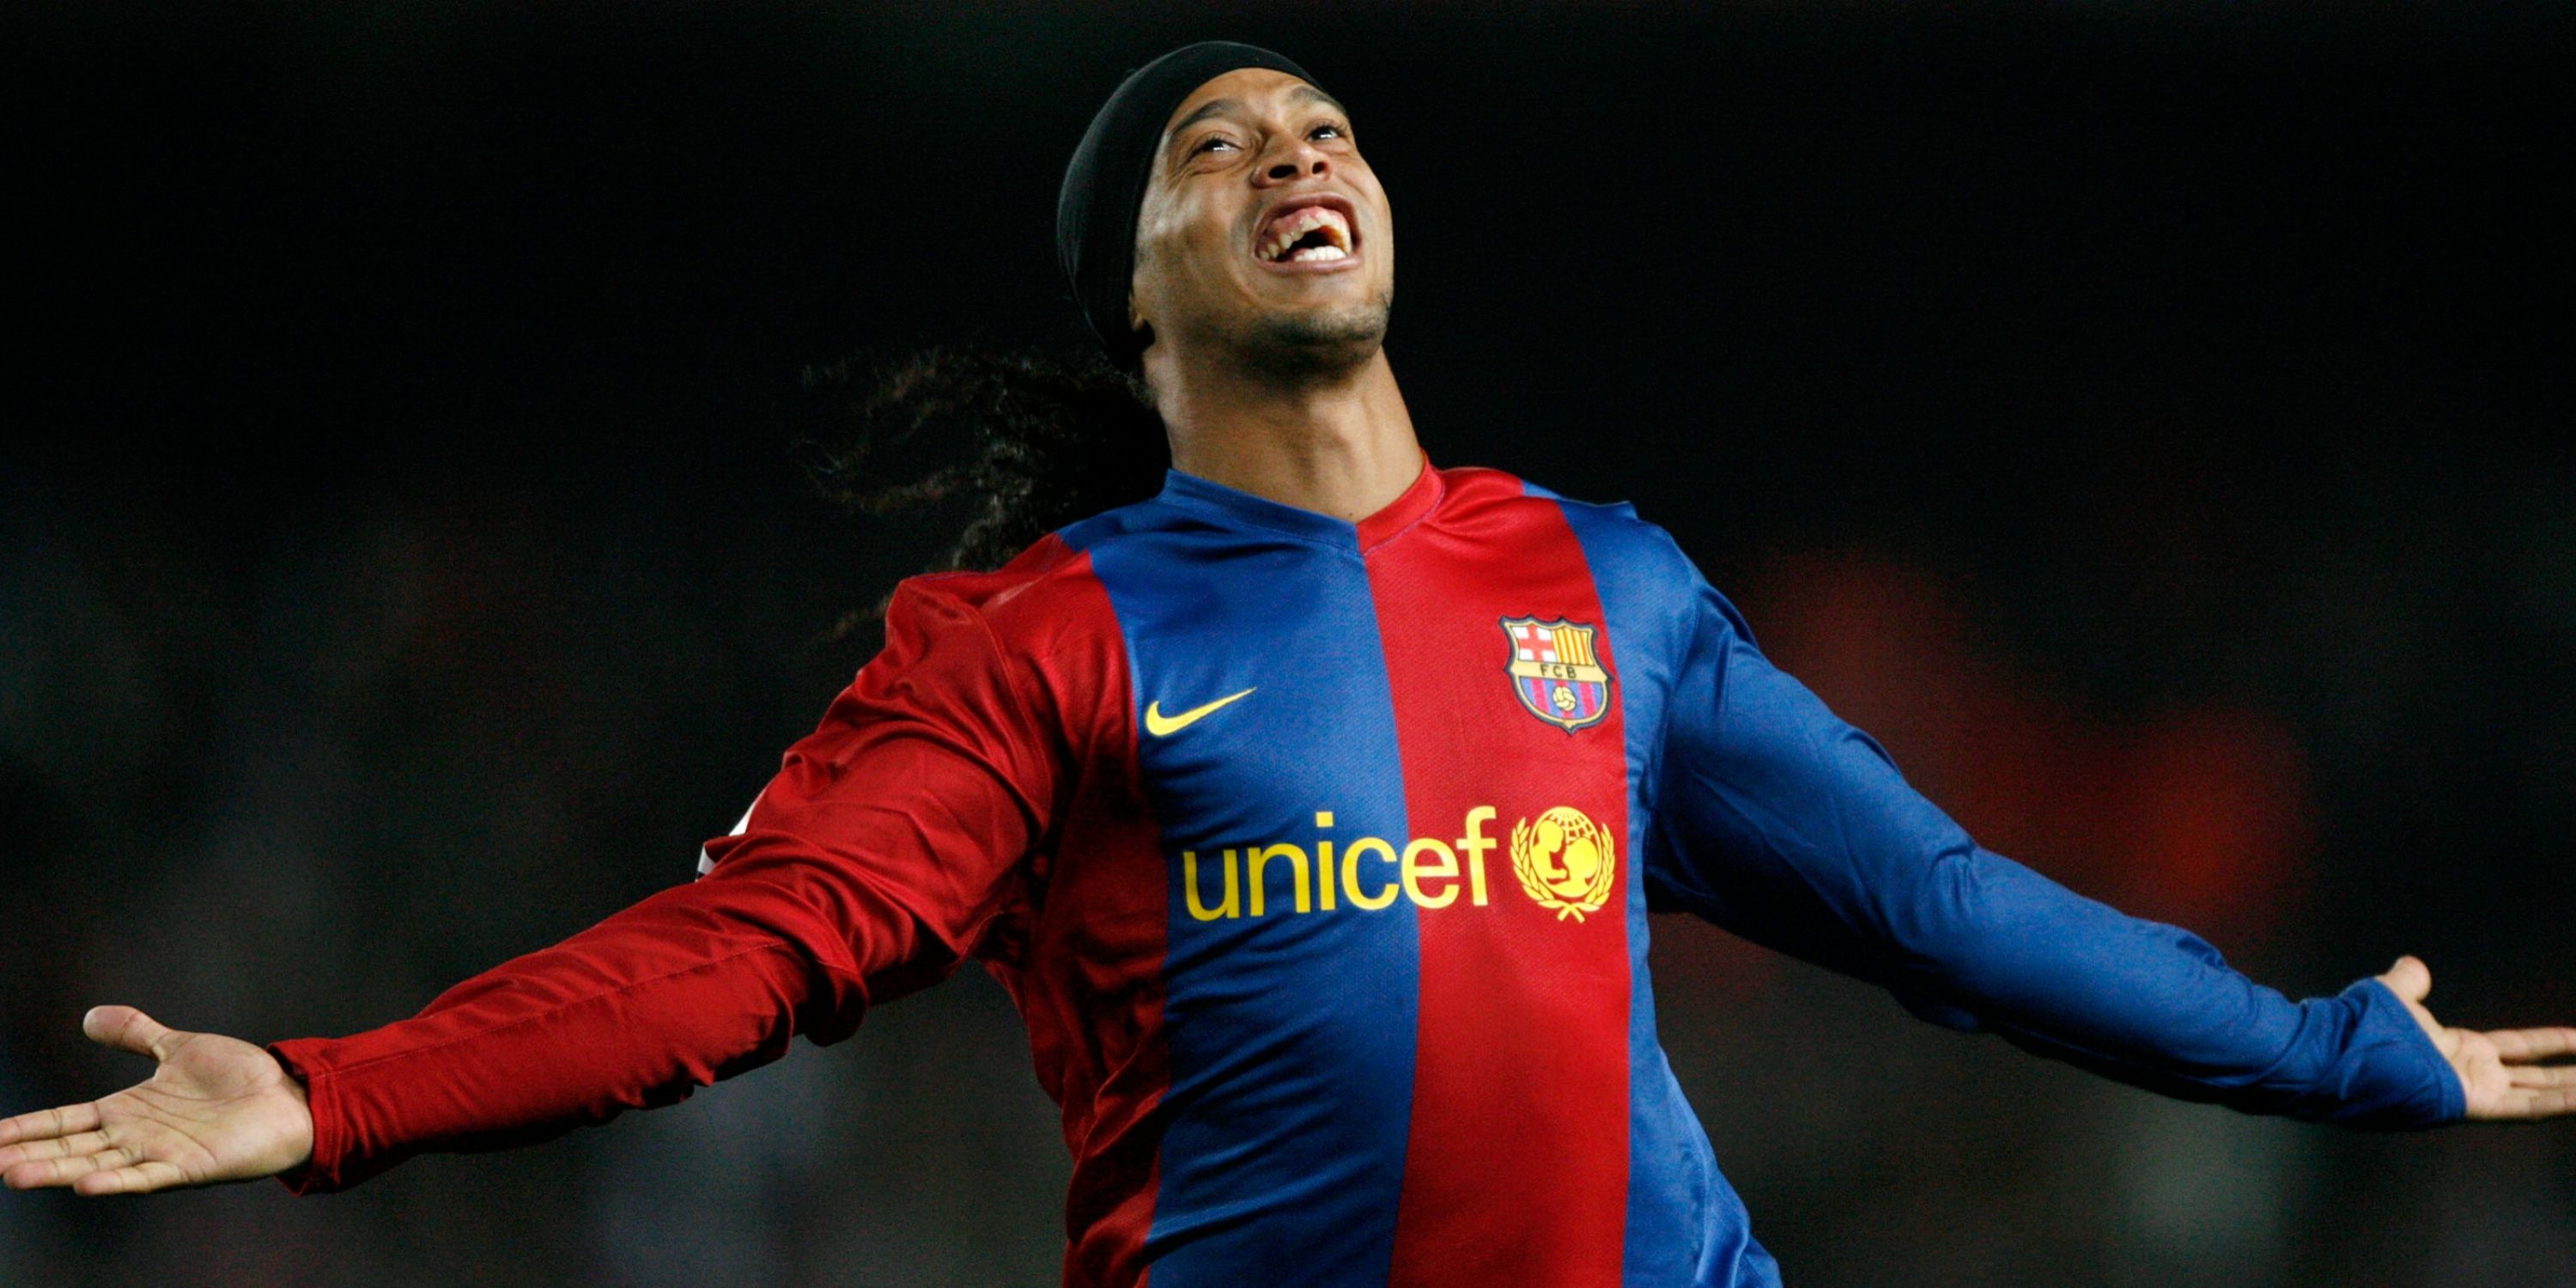 Barcelona-Unicef- Ronaldinho